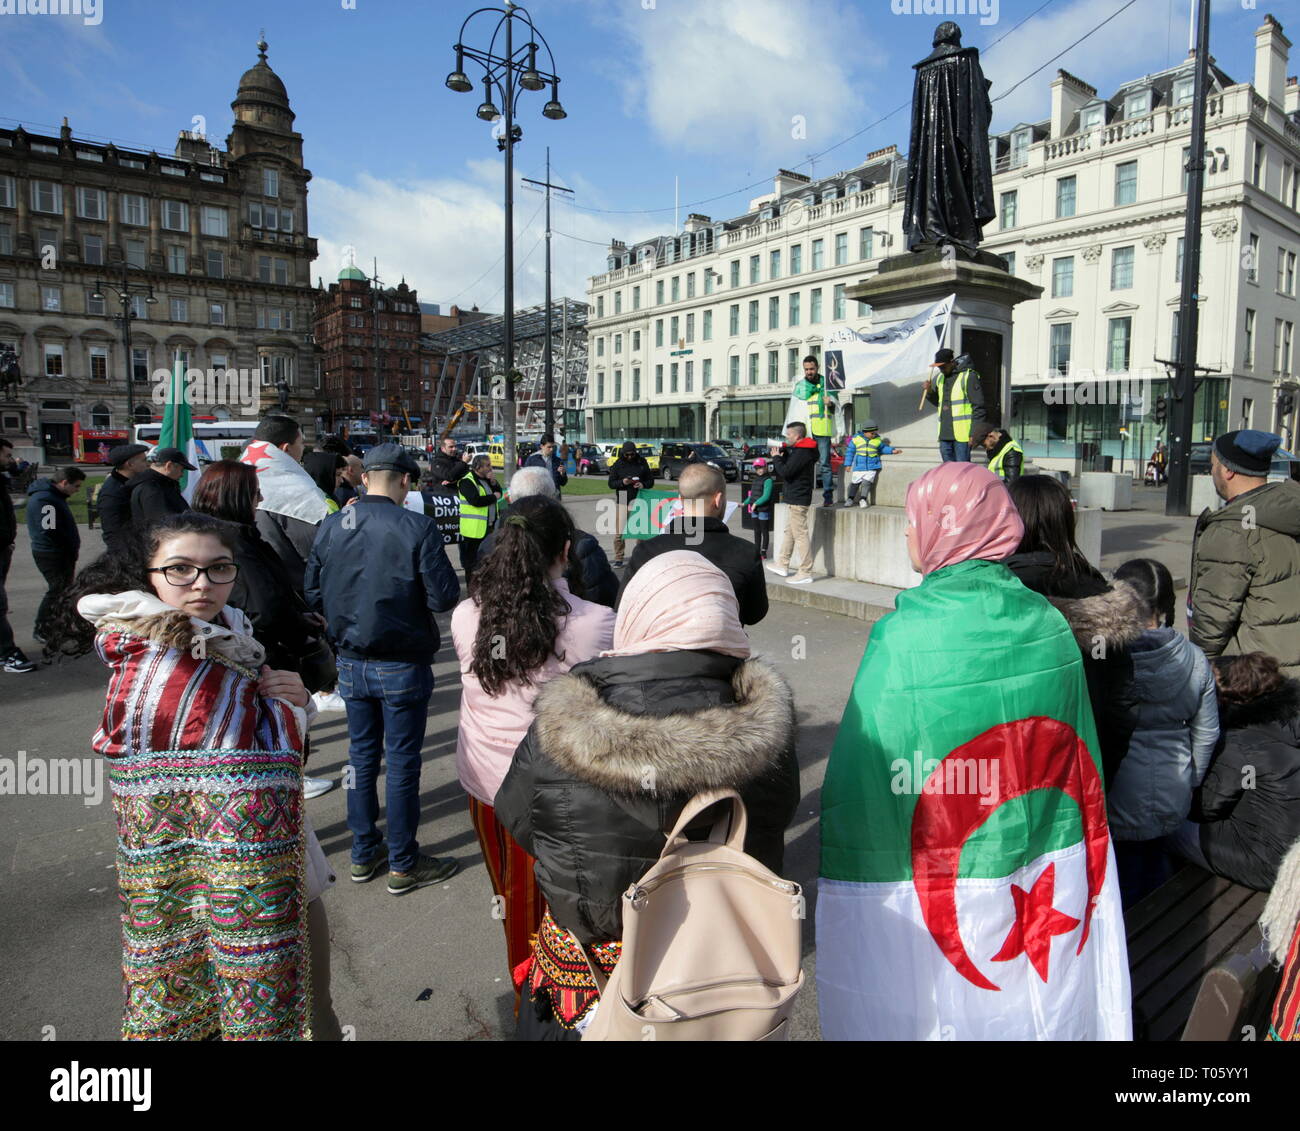 Glasgow, Écosse, Royaume-Uni, le 17 mars, 2019. Protestations algériennes : un mouvement populaire contre un président malade manifestaient dans George Square le moyeu civile à Glasgow aujourd'hui. Gérard Ferry/Alamy Live News Banque D'Images